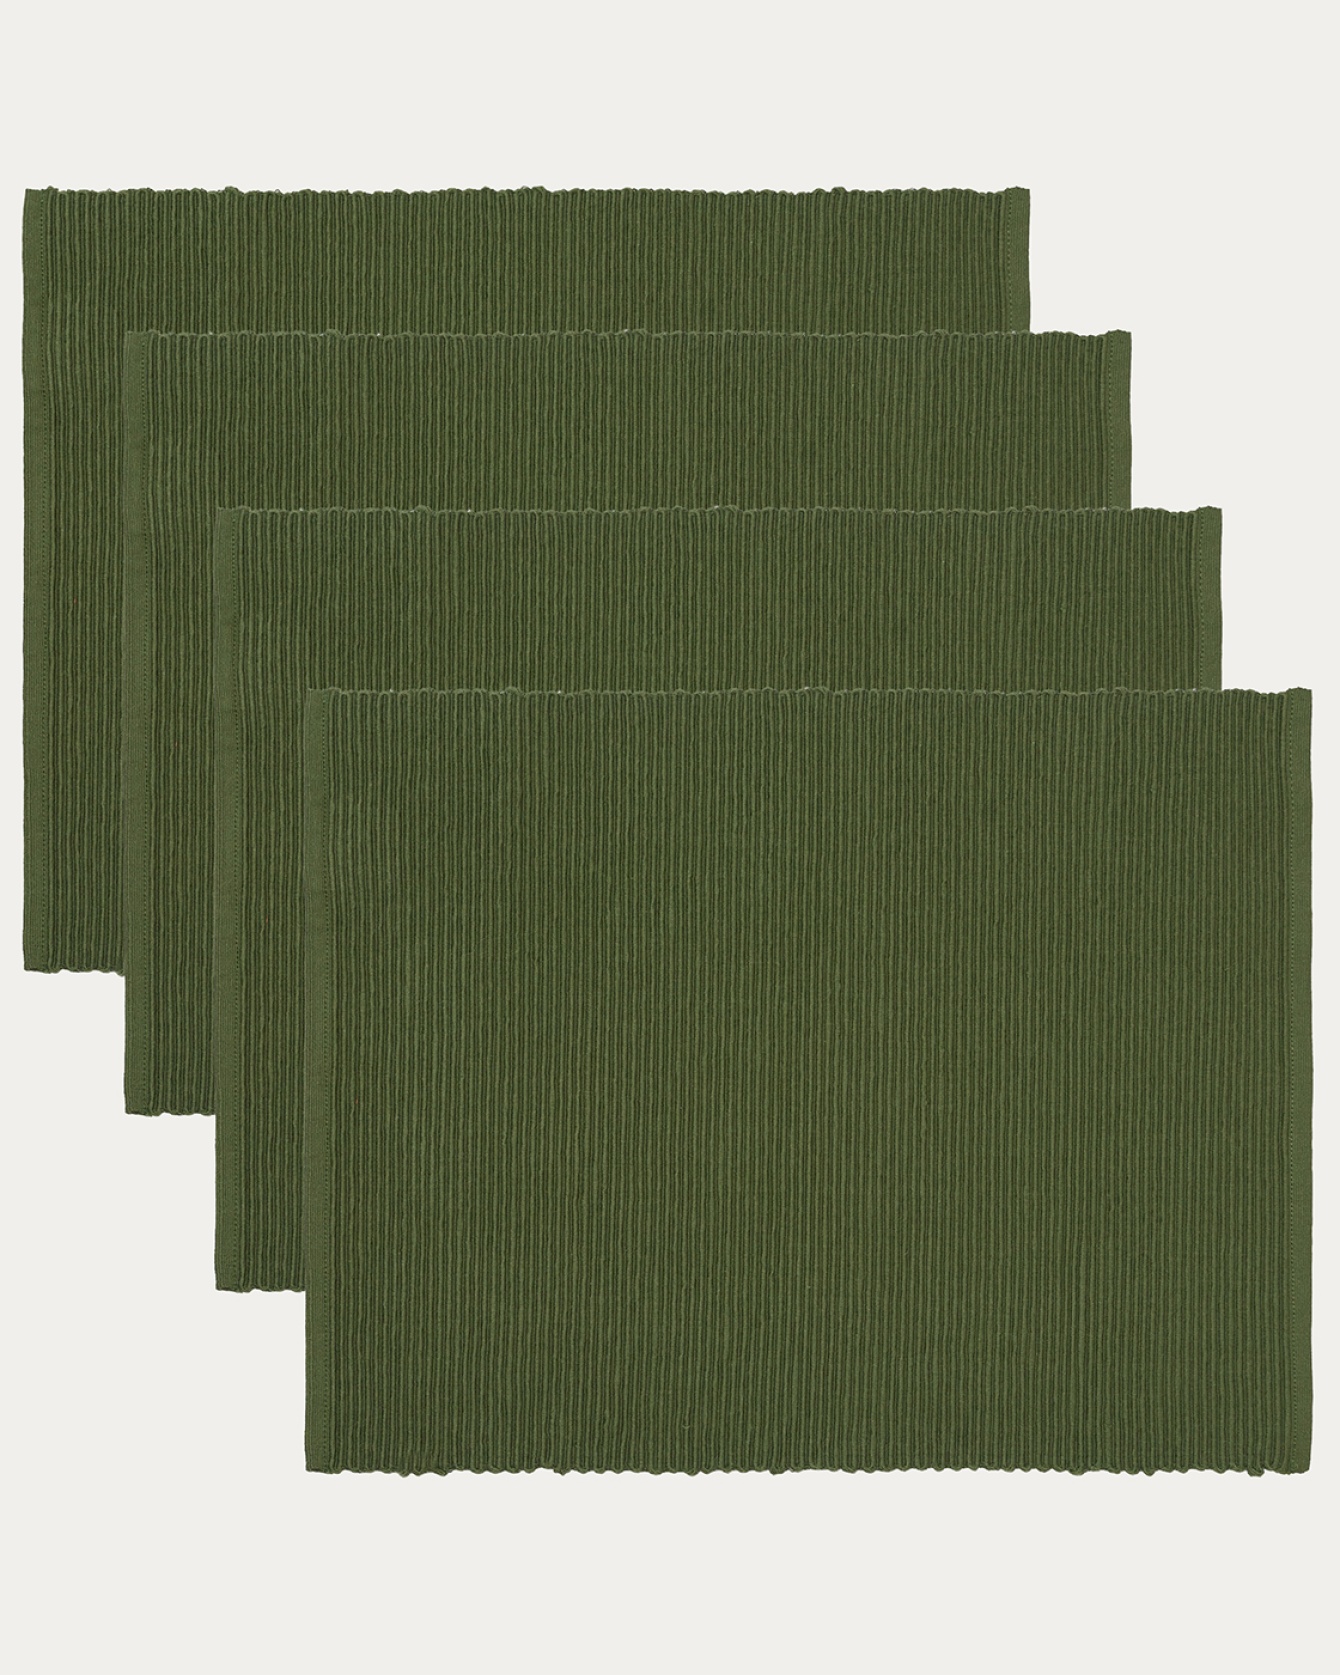 Image du produit set de table UNI vert olive foncé en coton doux de qualité côtelée de LINUM DESIGN. Taille 35 x 46 cm et vendu en lot de 4.